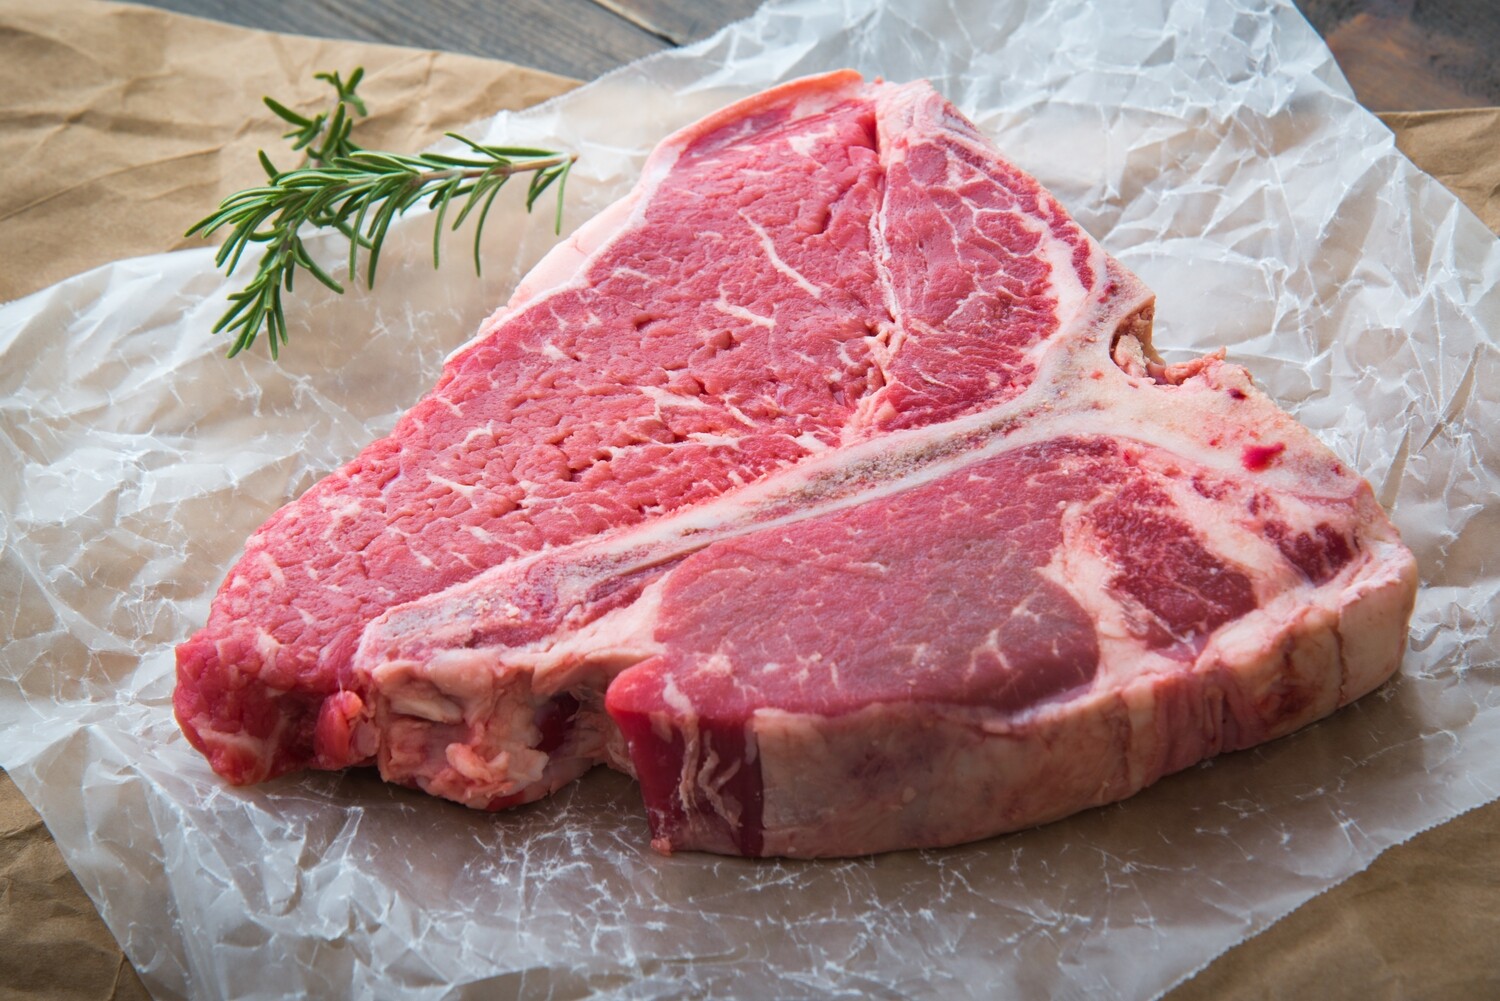 16oz USDA Prime Black Angus Porterhouse Steak (Sold in 2PK)